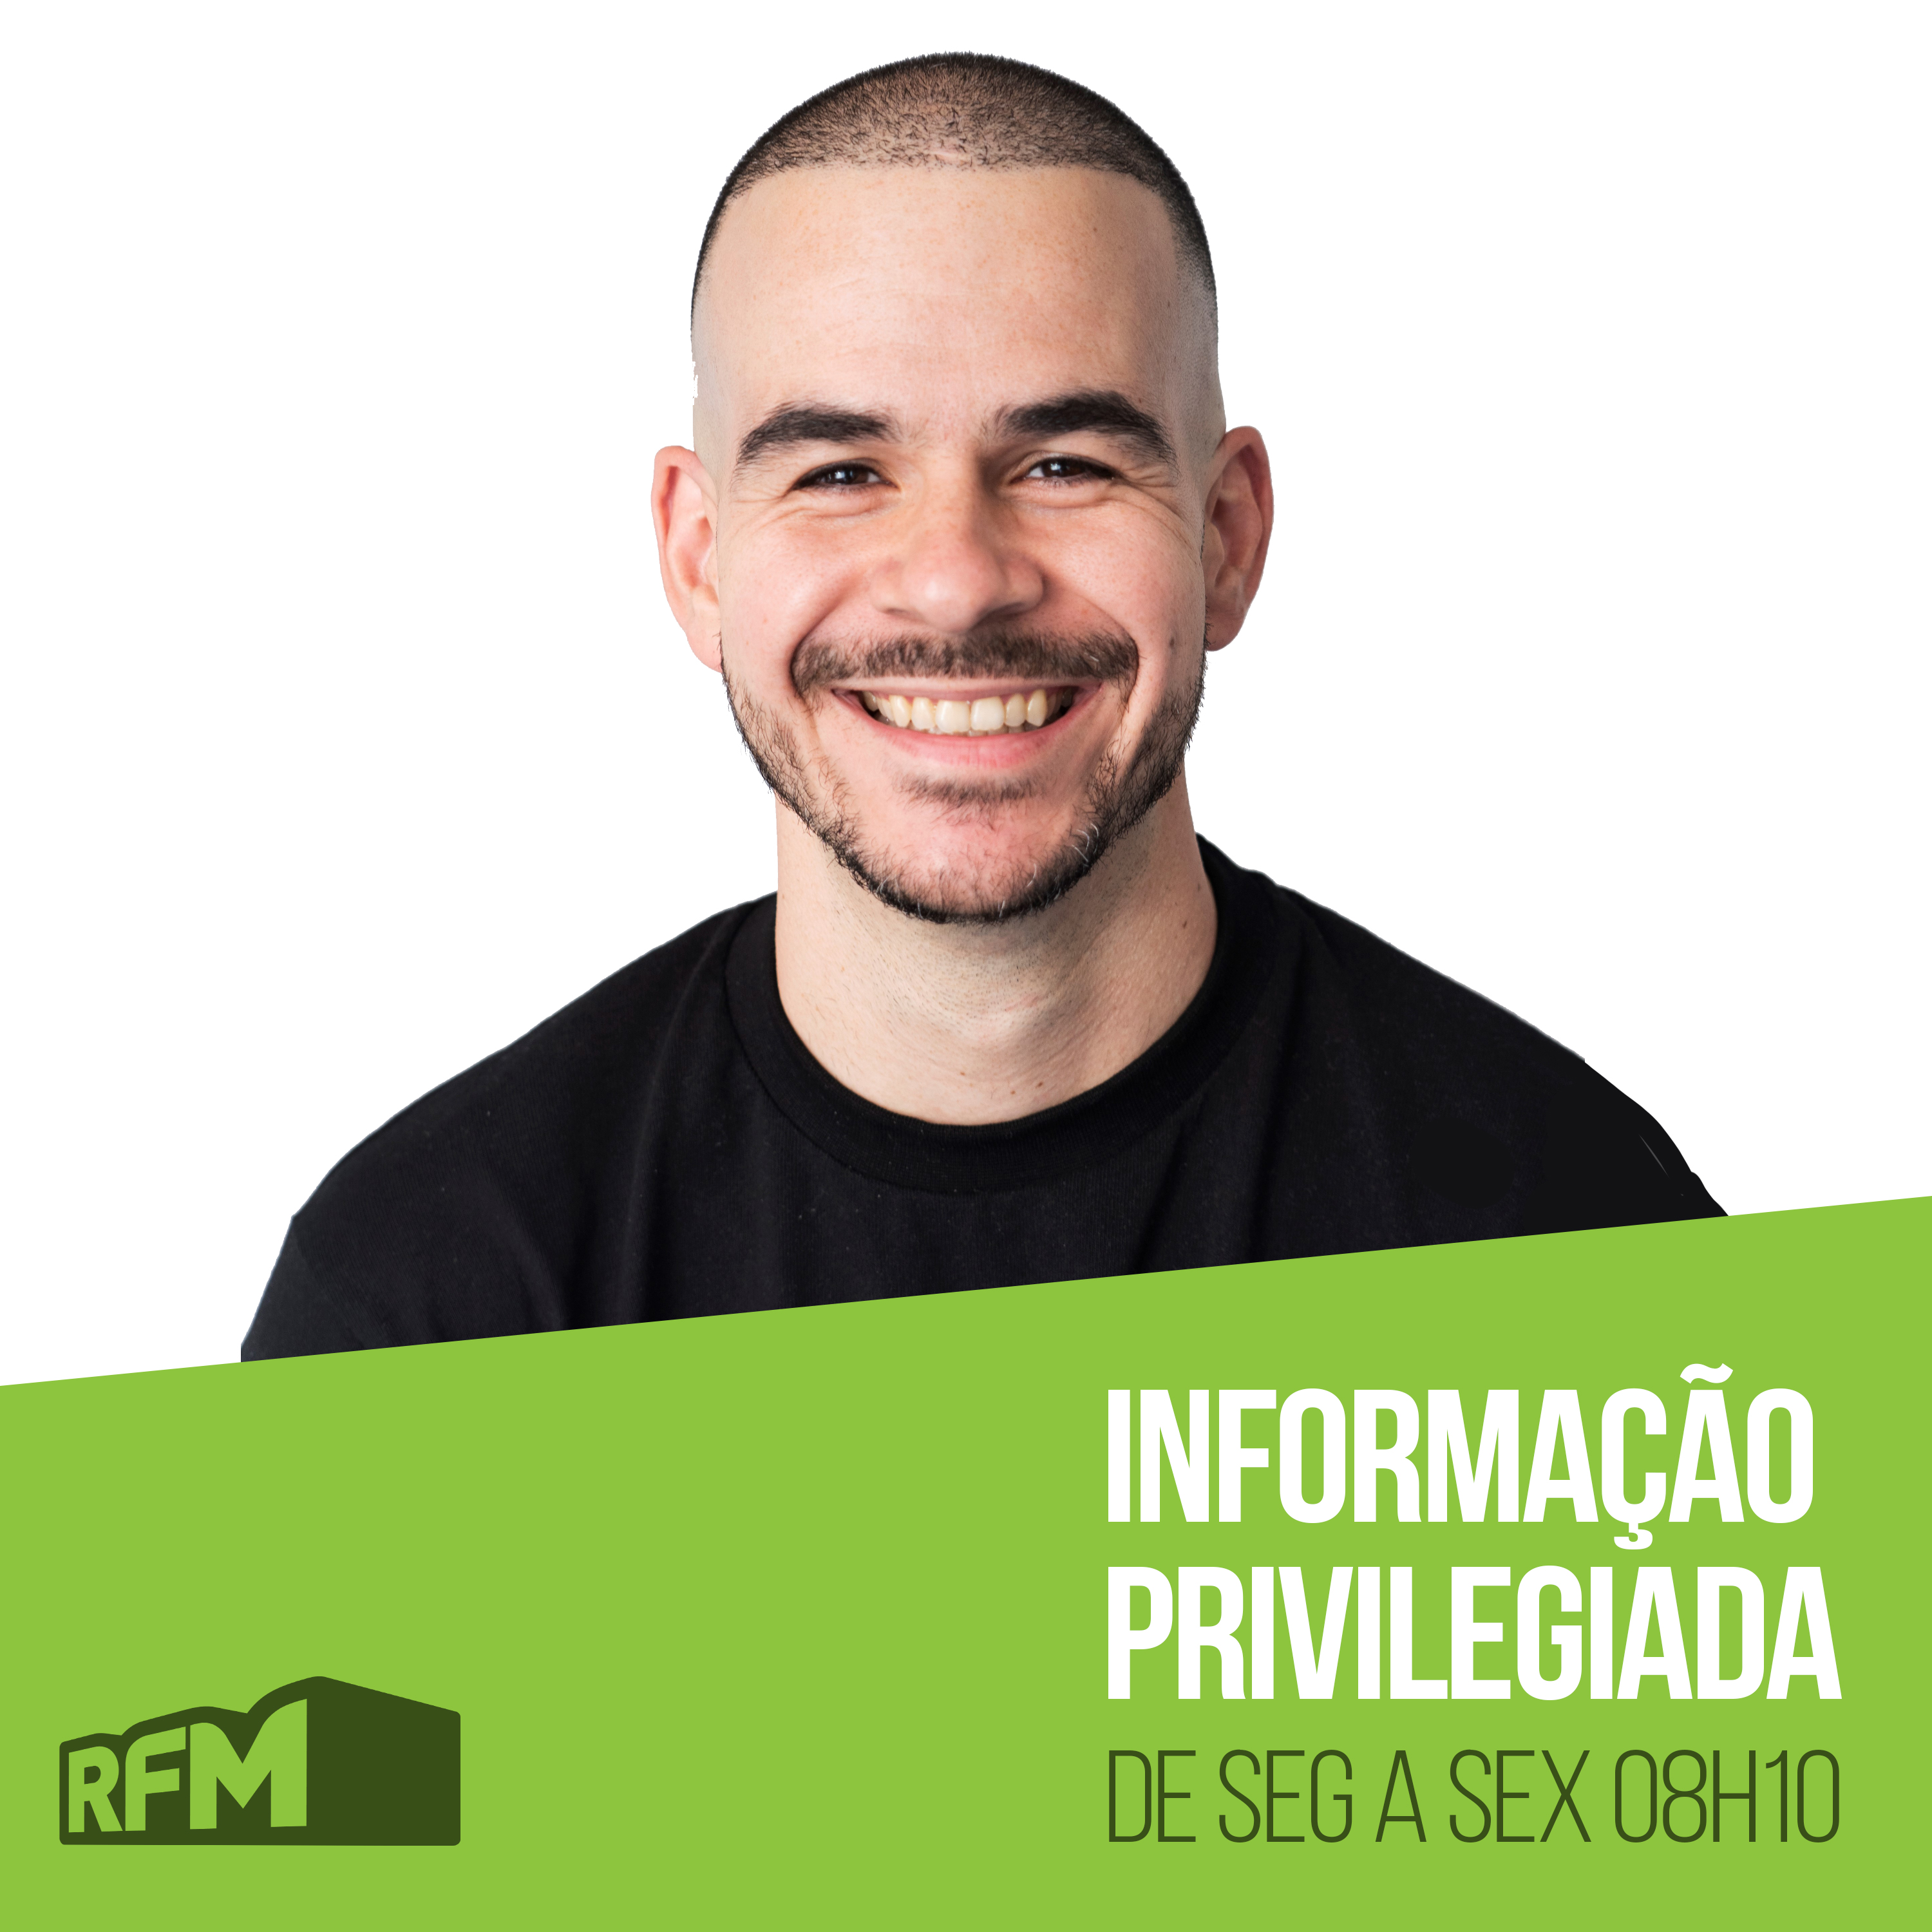 RFM - INFORMAÇÃO PRIVILEGIADA: O EMPREITEIRO DE RONALDO